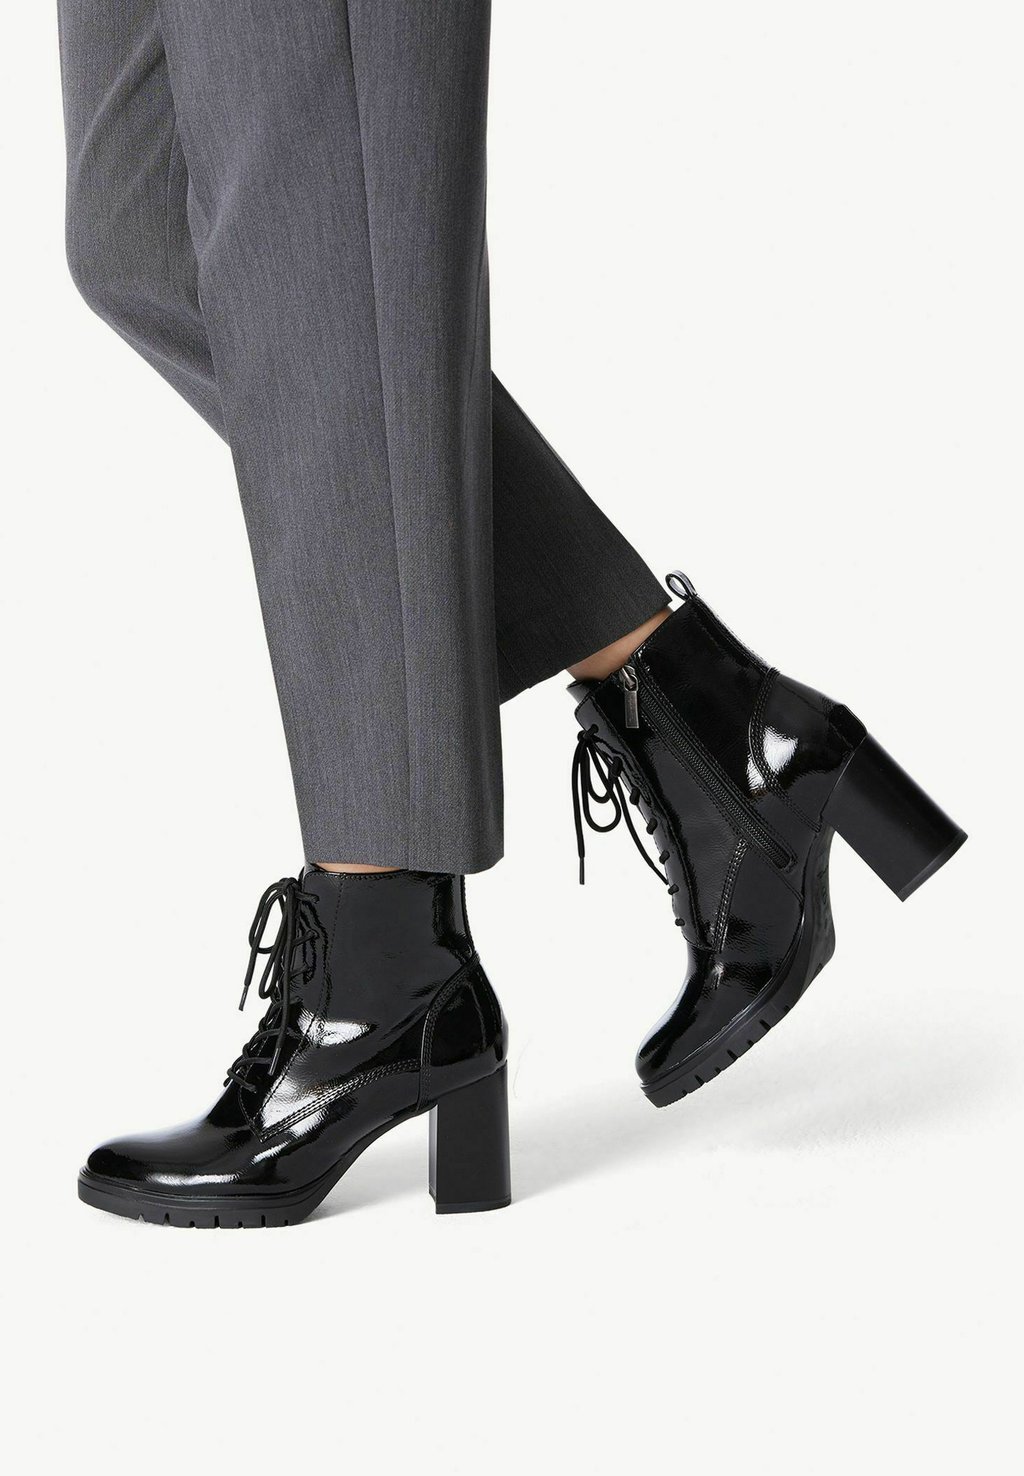 

Ботинки с платформой Tamaris, цвет black patent